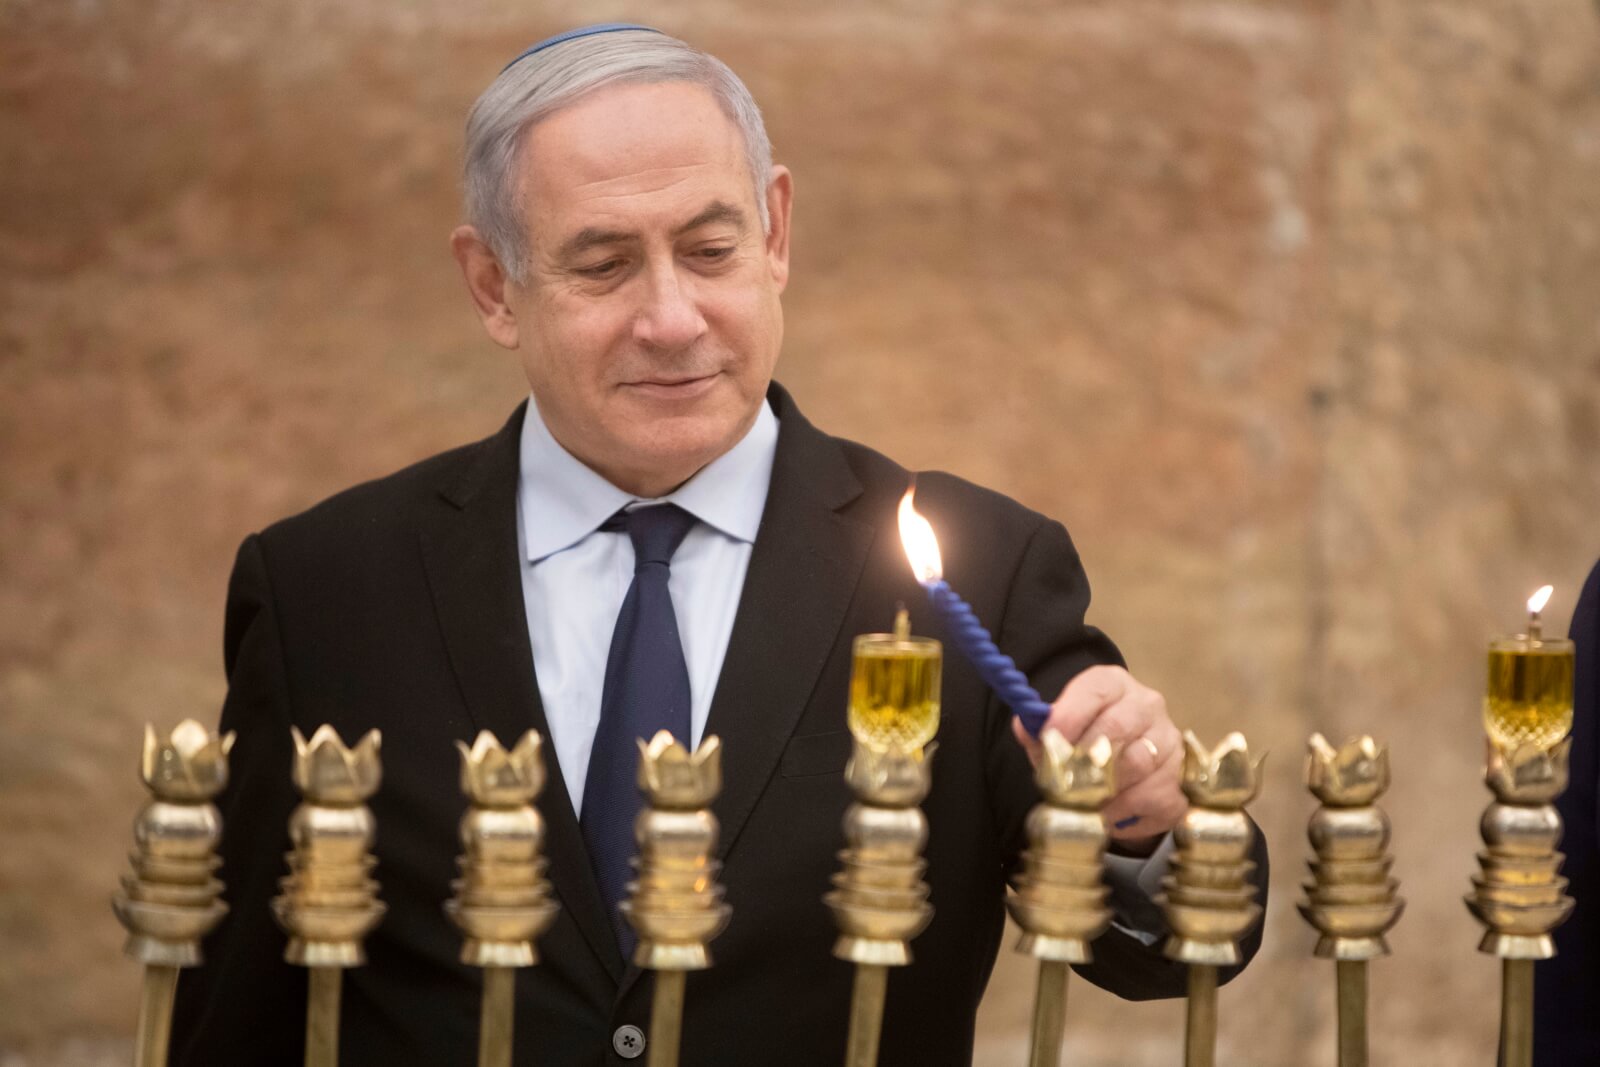 Premier Izraela odpala Chanukową świecę fot. EPA/Sebastian Scheiner
